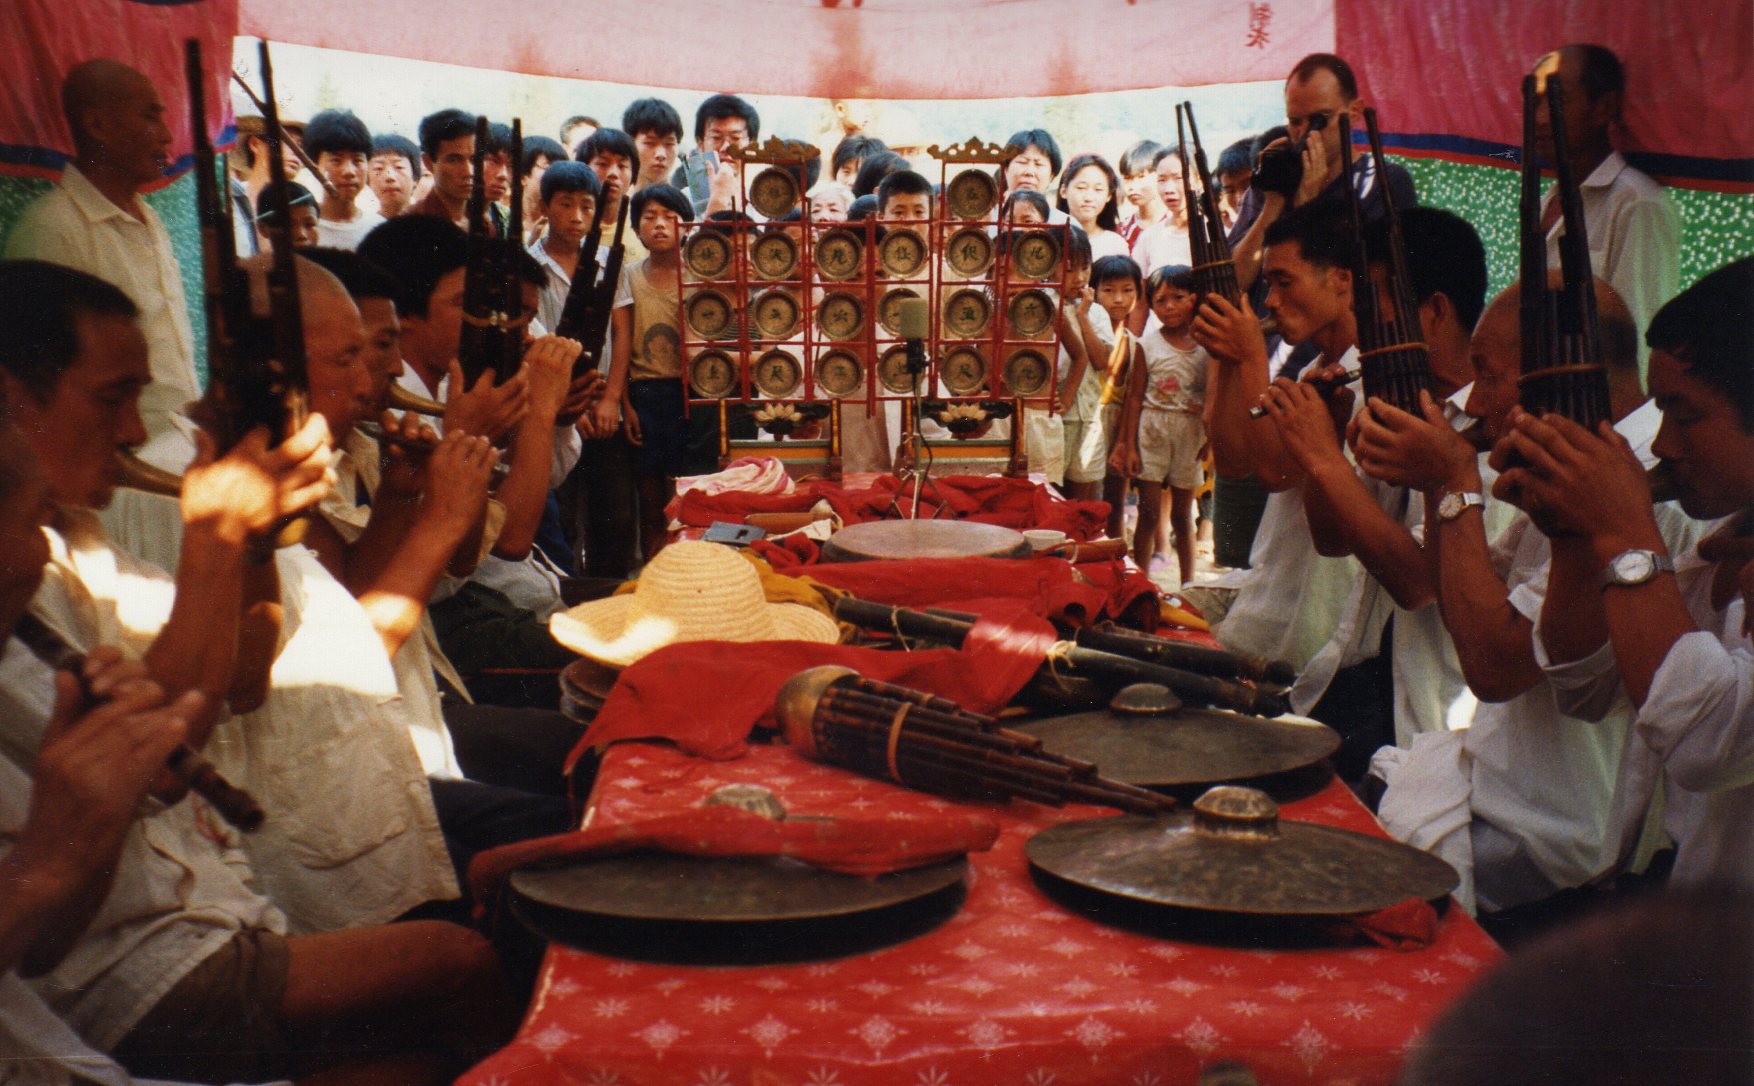 Hanzhuang 1993